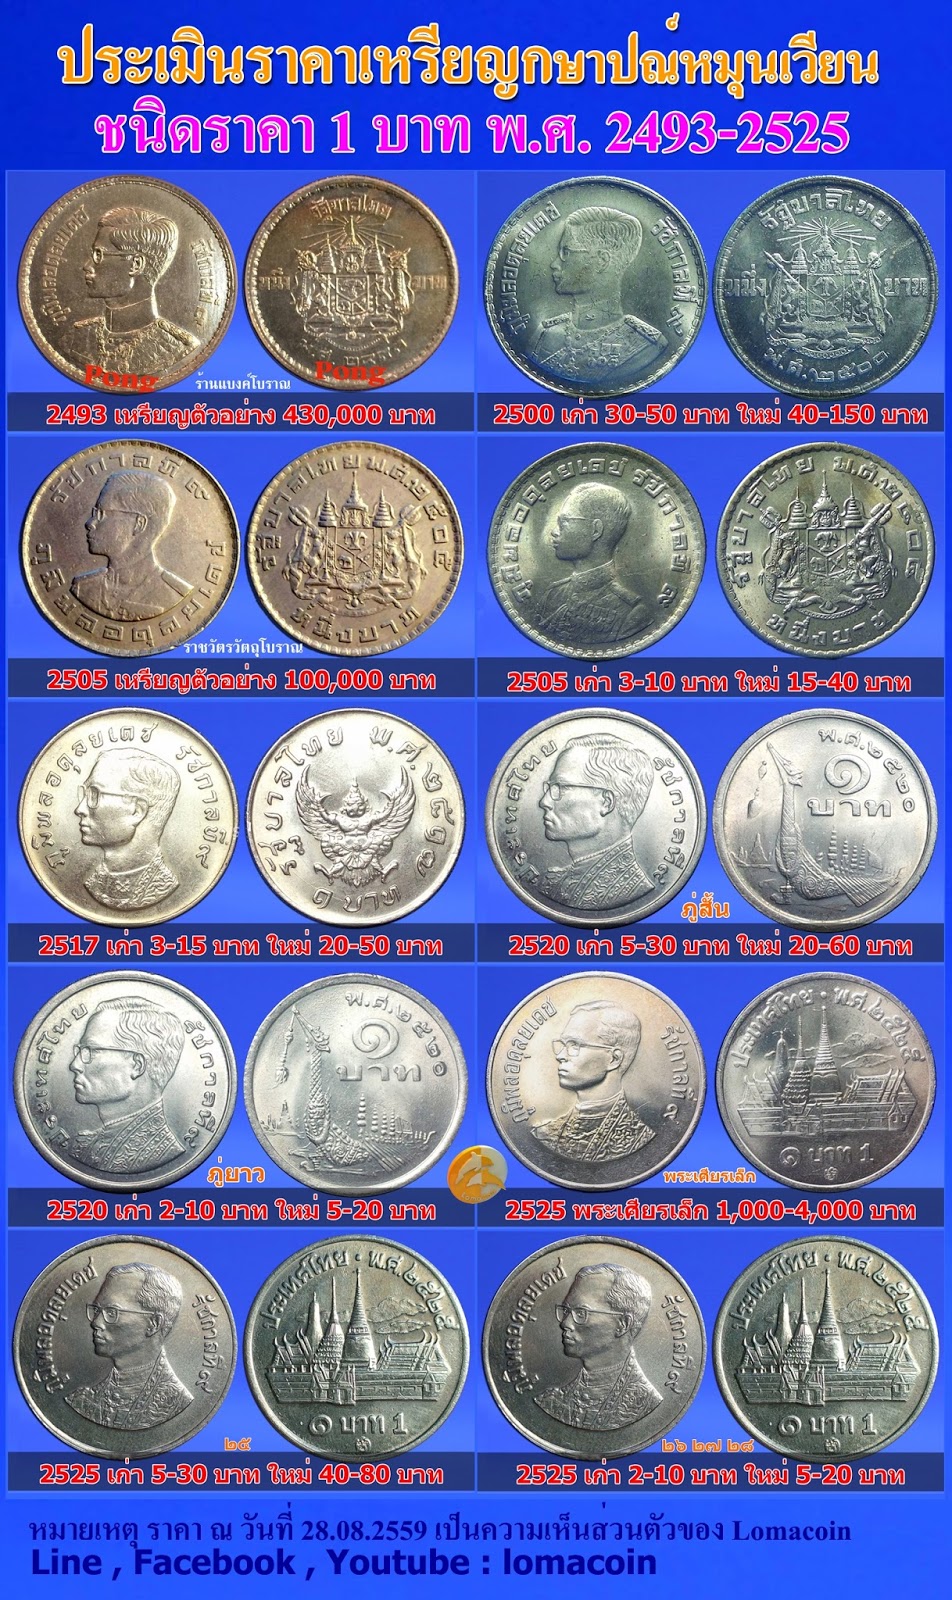 เรื่องเล่า เรื่องเหรียญ: ประเมิน ราคาเหรียญกษาปณ์หมุนเวียนชนิดราคา 1 บาท  พ.ศ. 2500 - 2525